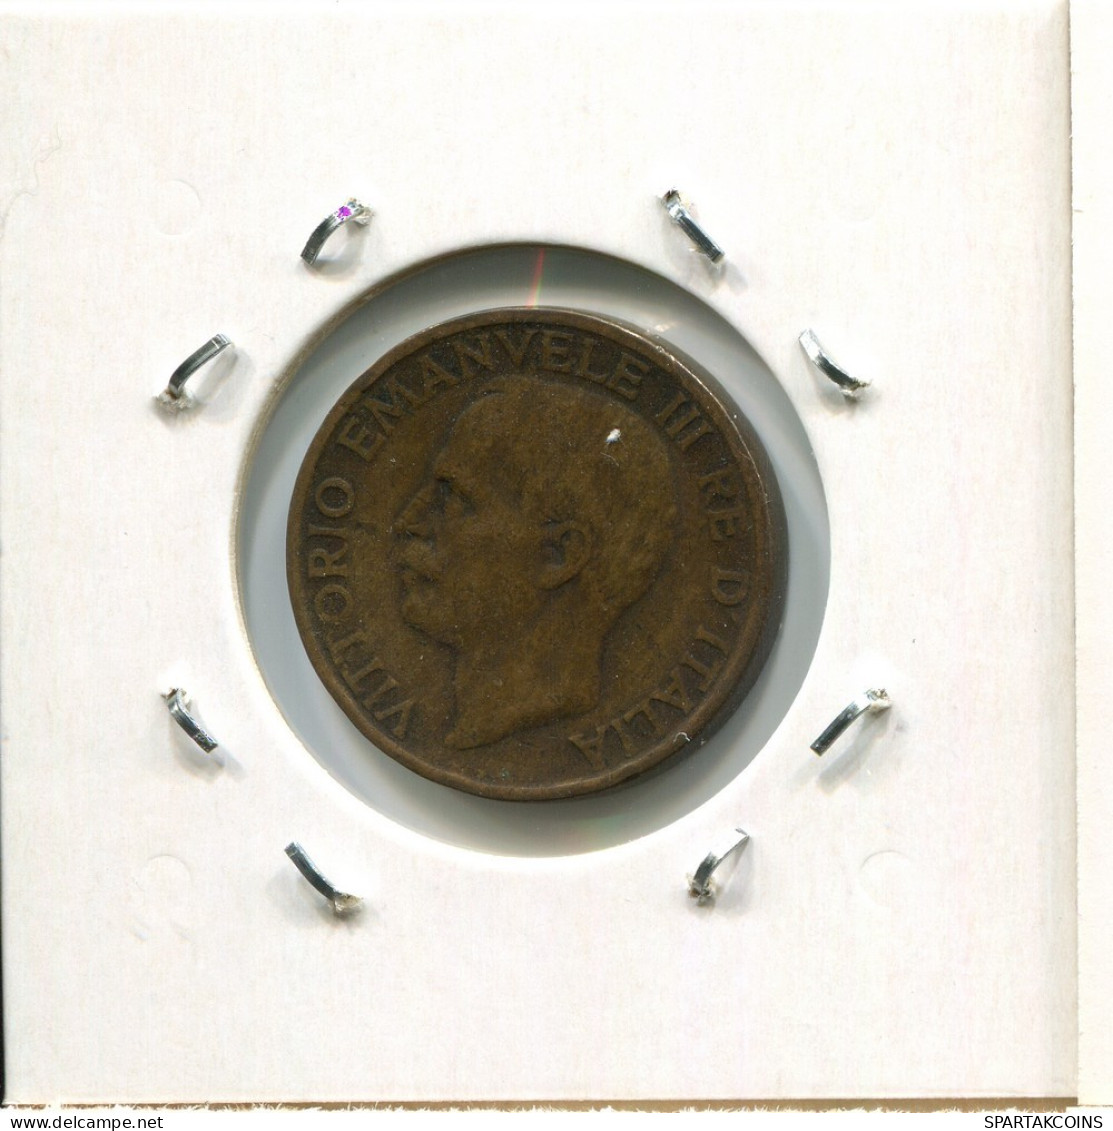 10 CENTESIMI 1921 ITALY Coin #AR623.U.A - 1900-1946 : Victor Emmanuel III & Umberto II